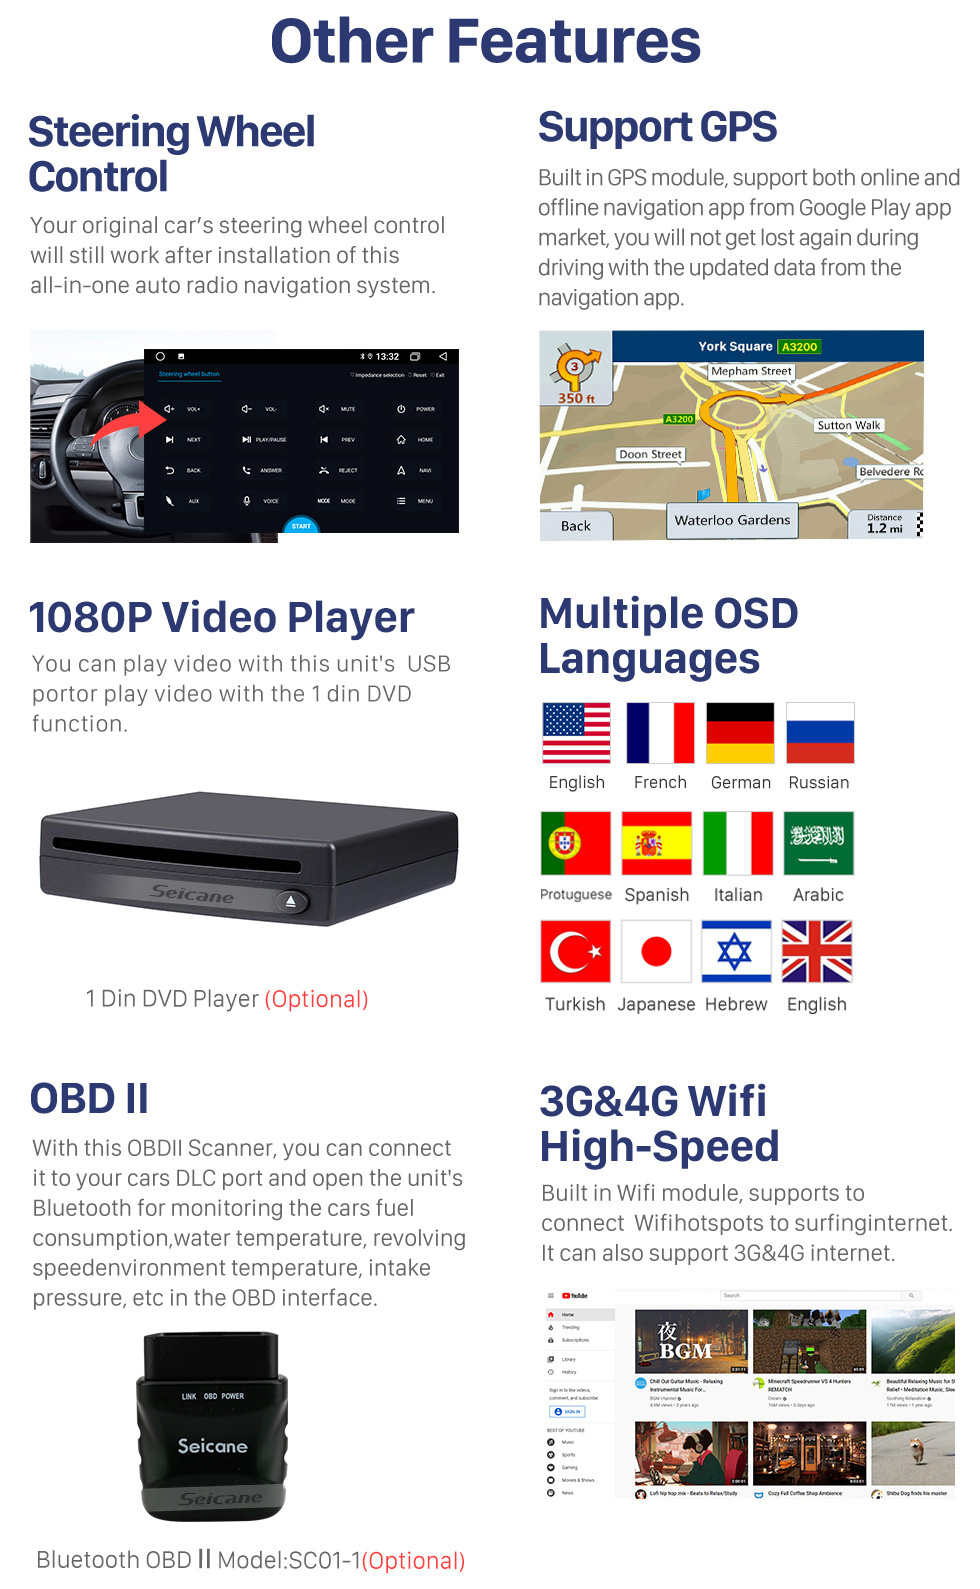 Seicane Rádio OEM 10.1 polegadas Android 10.0 para 2015-2016 TOYOTA ALPHARD Bluetooth HD Touchscreen GPS Navegação AUX USB com suporte Carplay DVR OBD câmera retrovisor